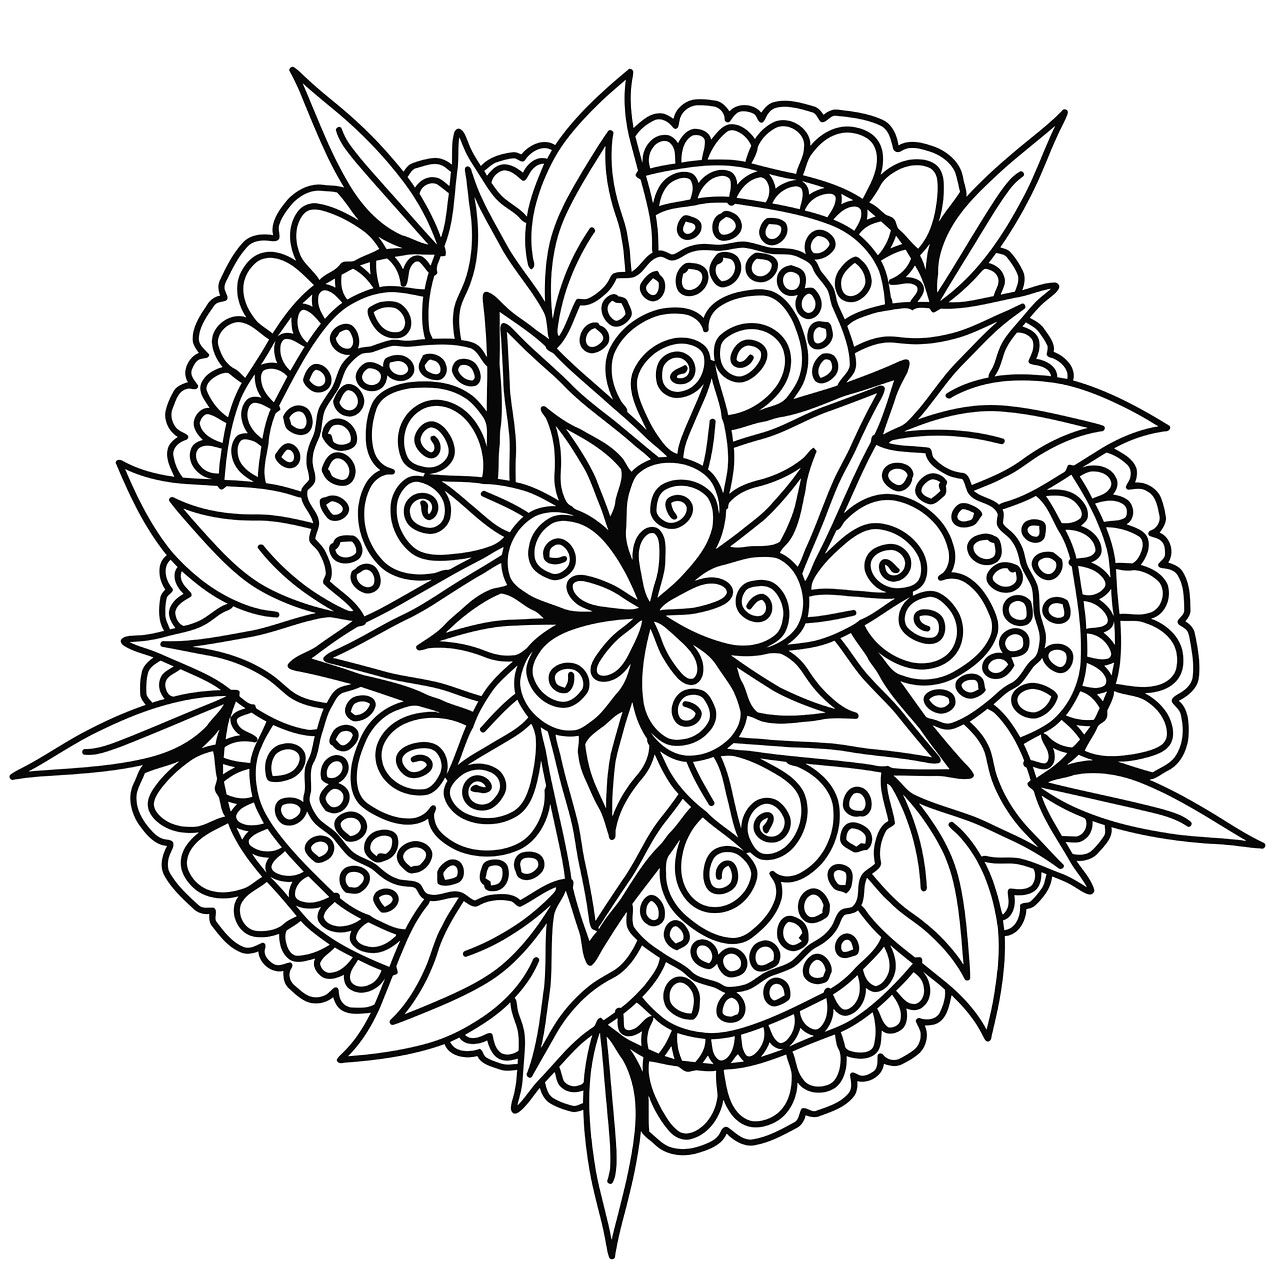 Klare Linien für ein handgezeichnetes Pflanzenmandala mit schönen Blättern, Blumen und abstrakten Elementen.